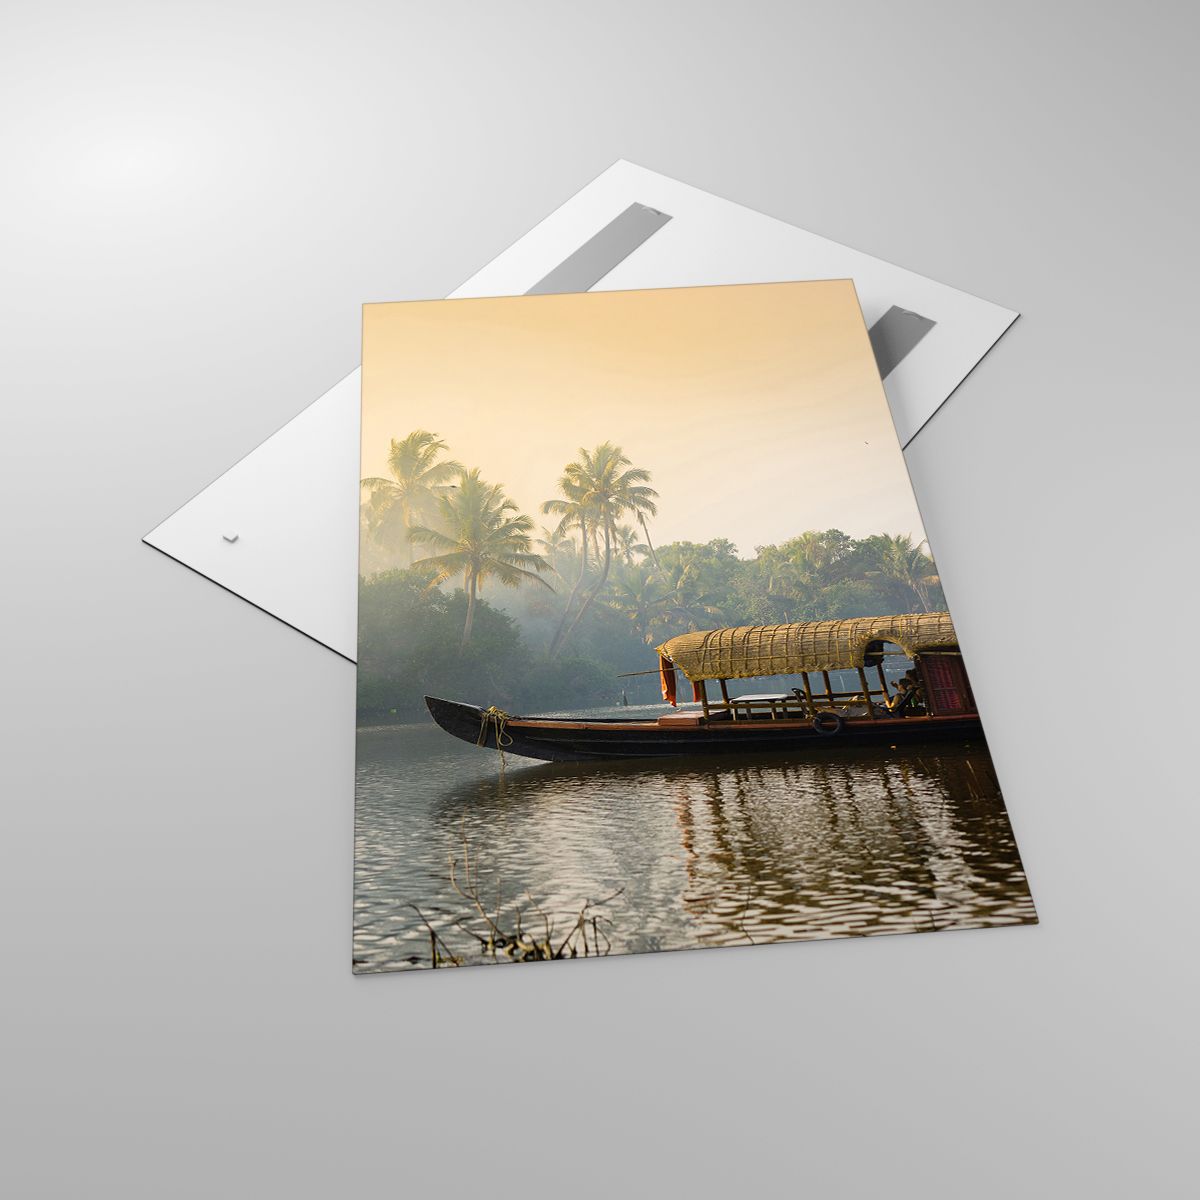 Glasbild Indien, Glasbild Landschaft, Glasbild Fluss, Glasbild Lodz, Glasbild Natur